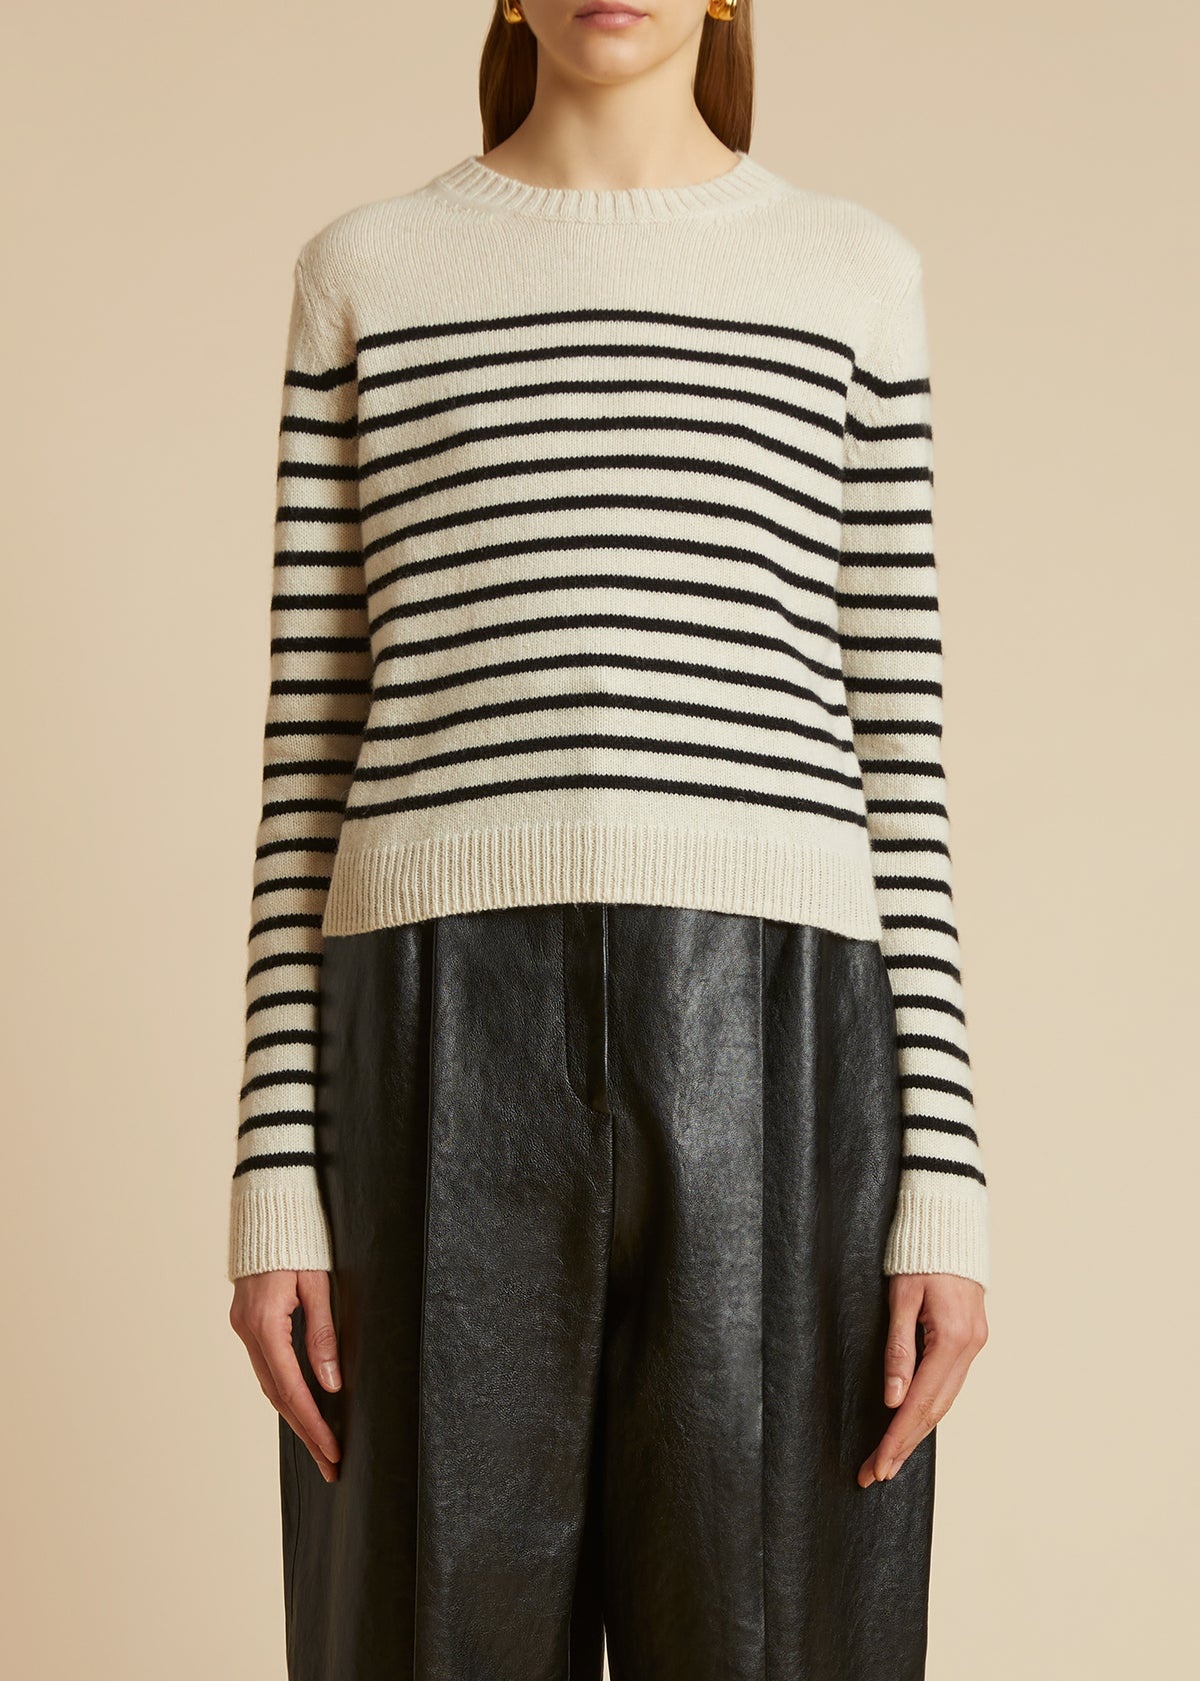 The Diletta Sweater in Magnolia and Black Stripe - 1